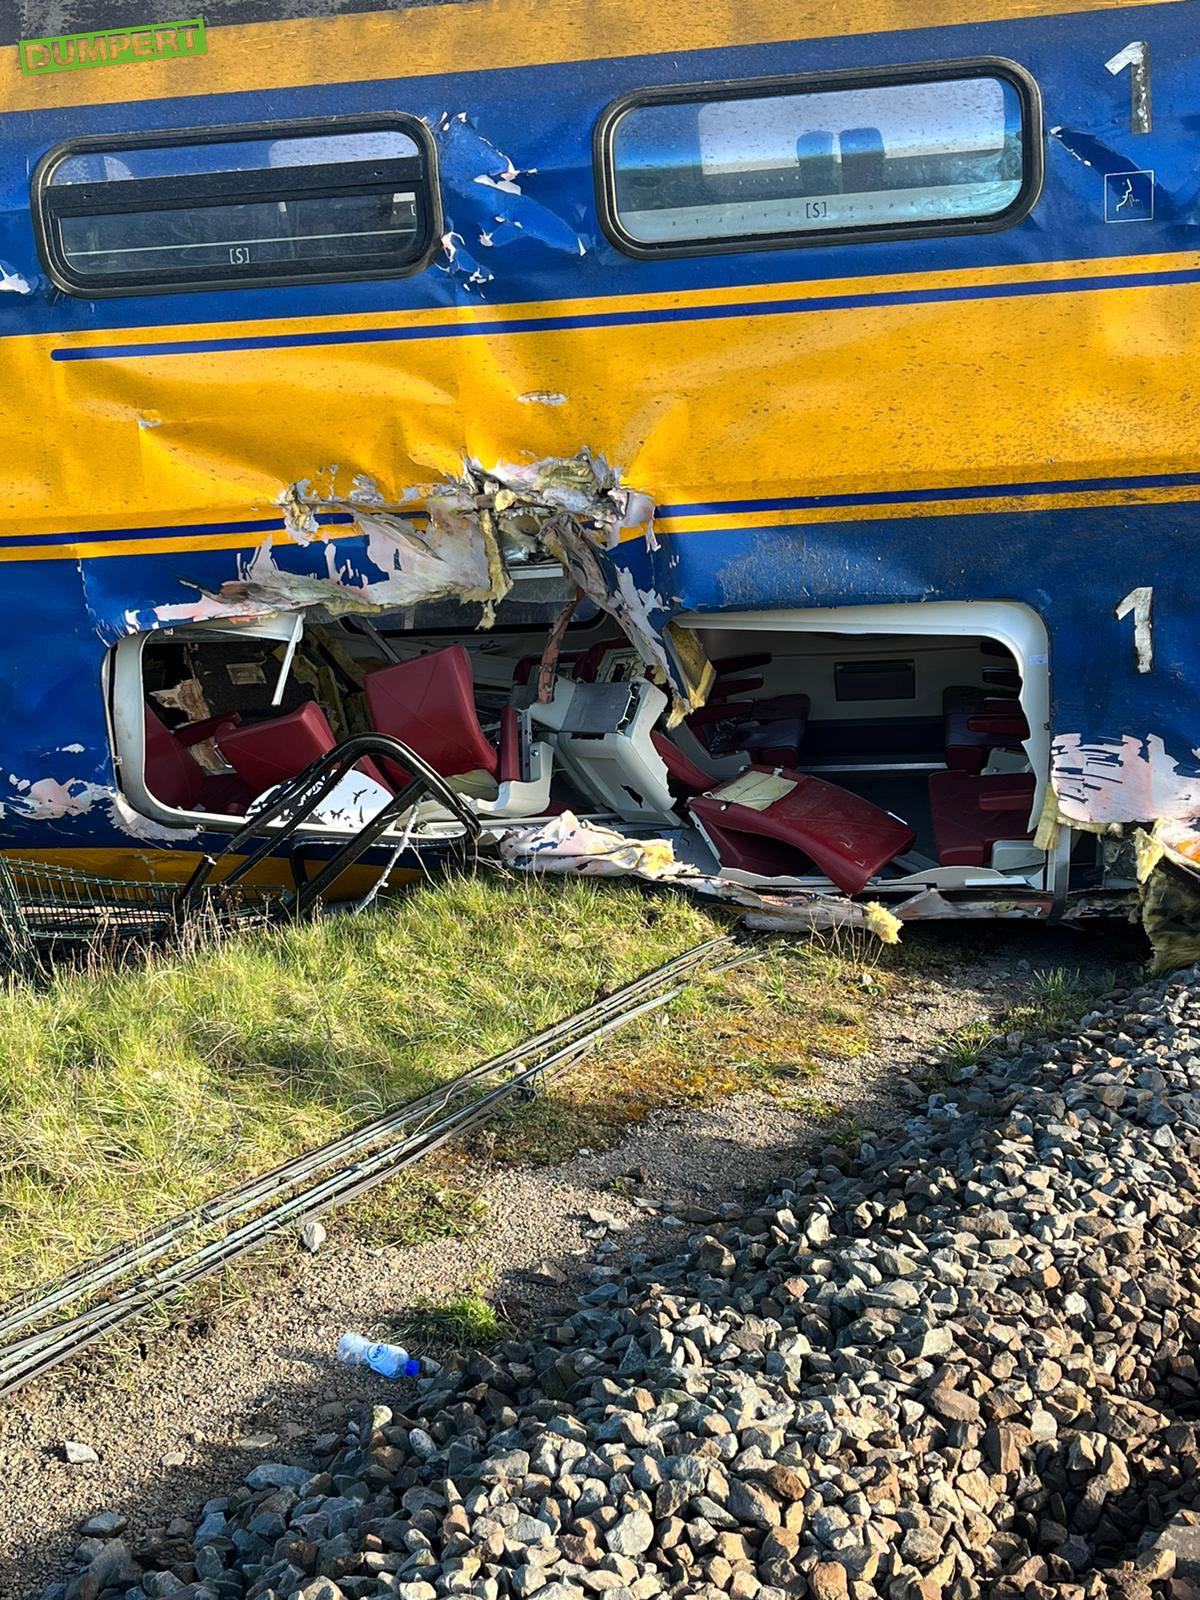 Meer beelden van treinramp Voorschoten